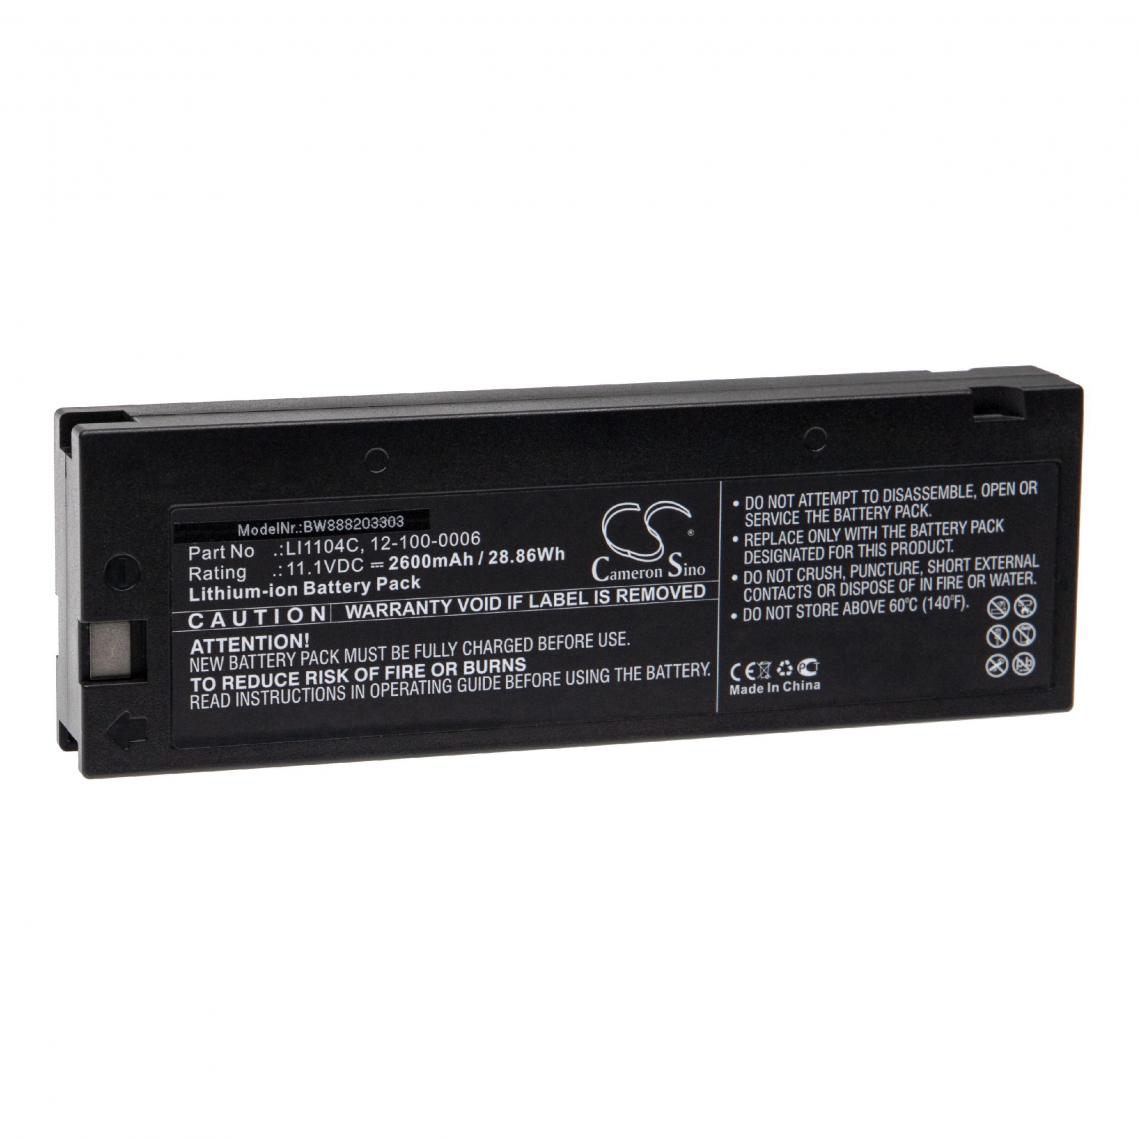 Vhbw - vhbw Batterie remplacement pour Biolight 12-100-0006, LI1104C pour appareil médical (2600mAh, 11,1V, Li-ion) - Piles spécifiques